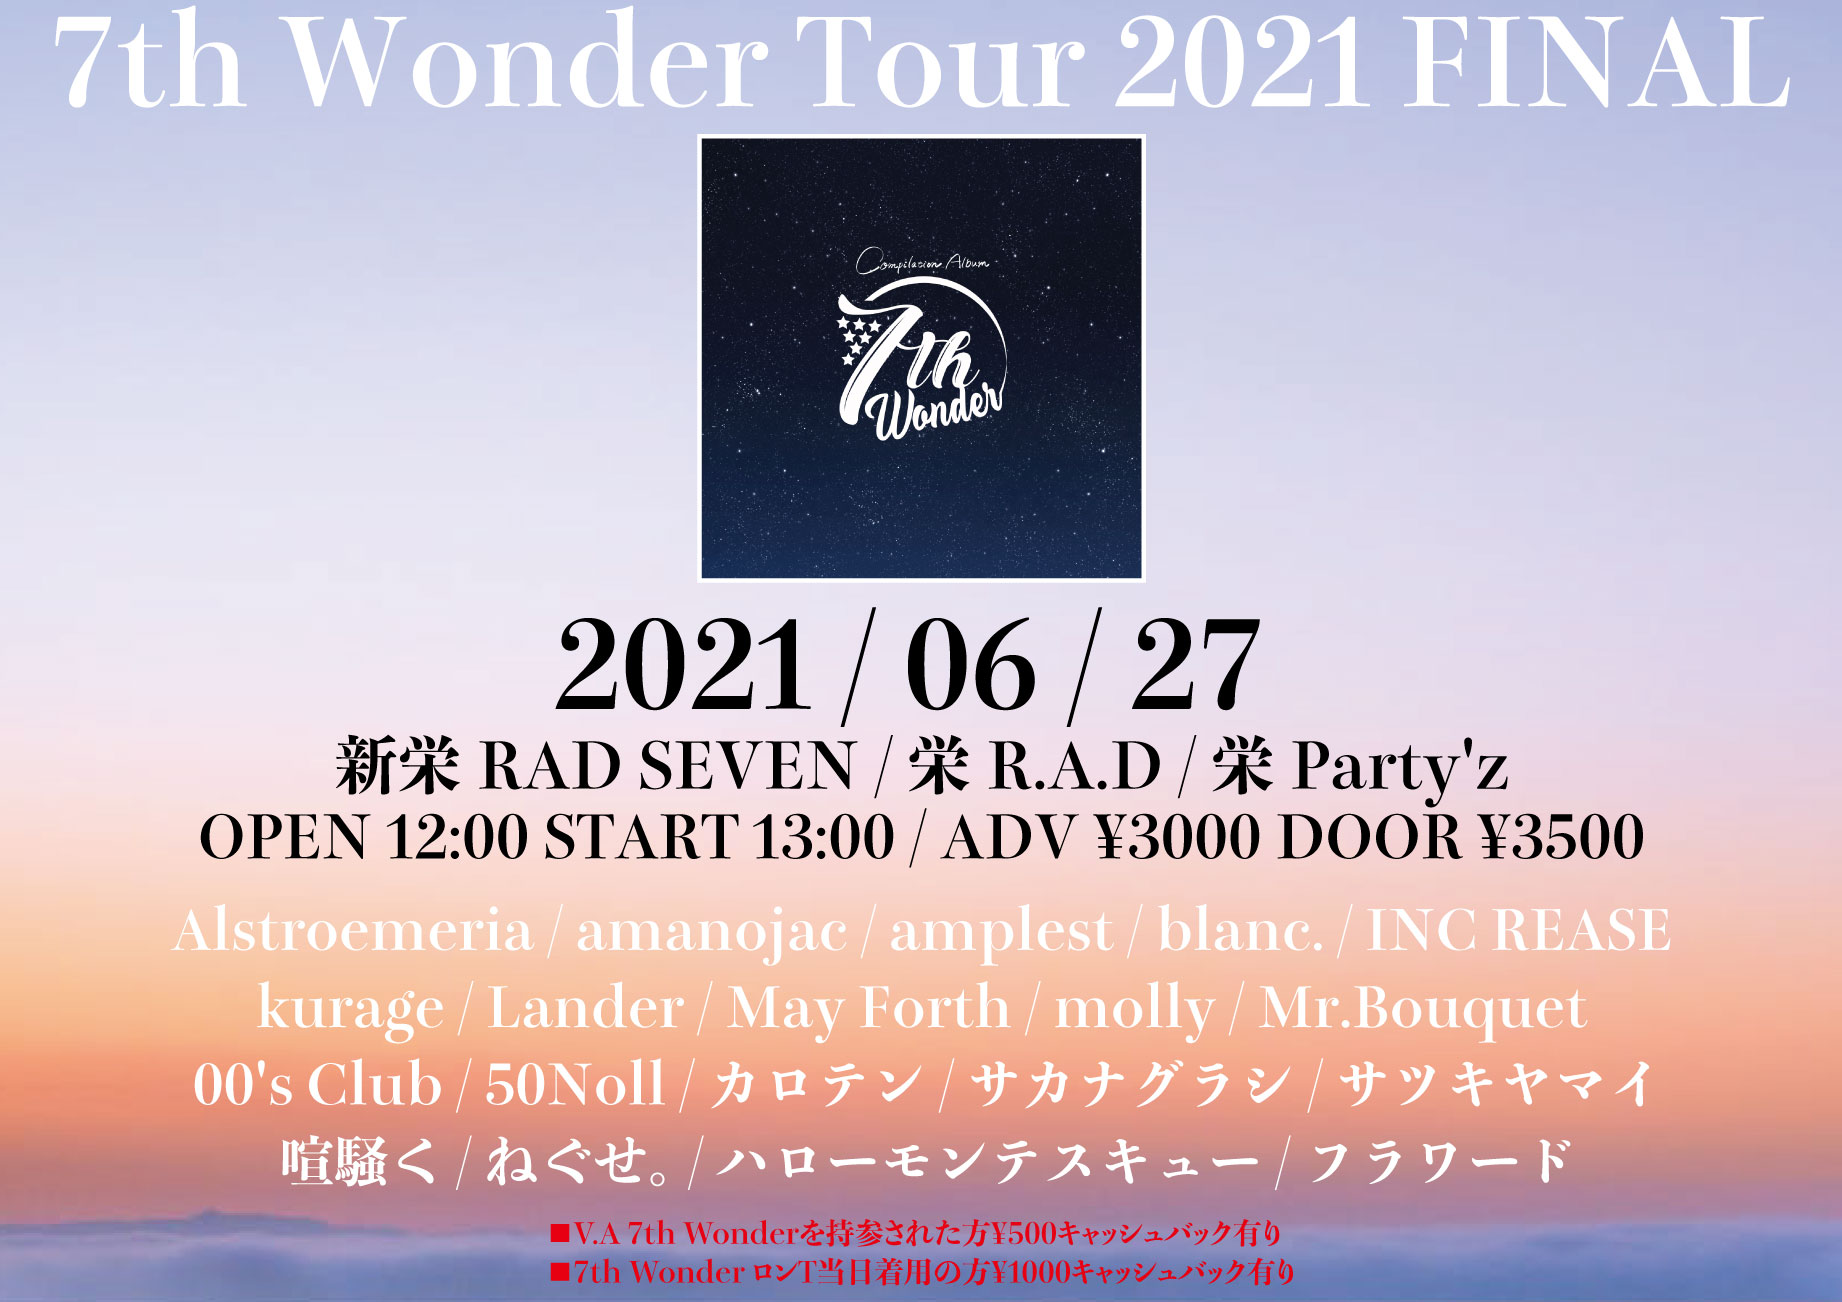 7th Wonder Tour 2021 FINAL